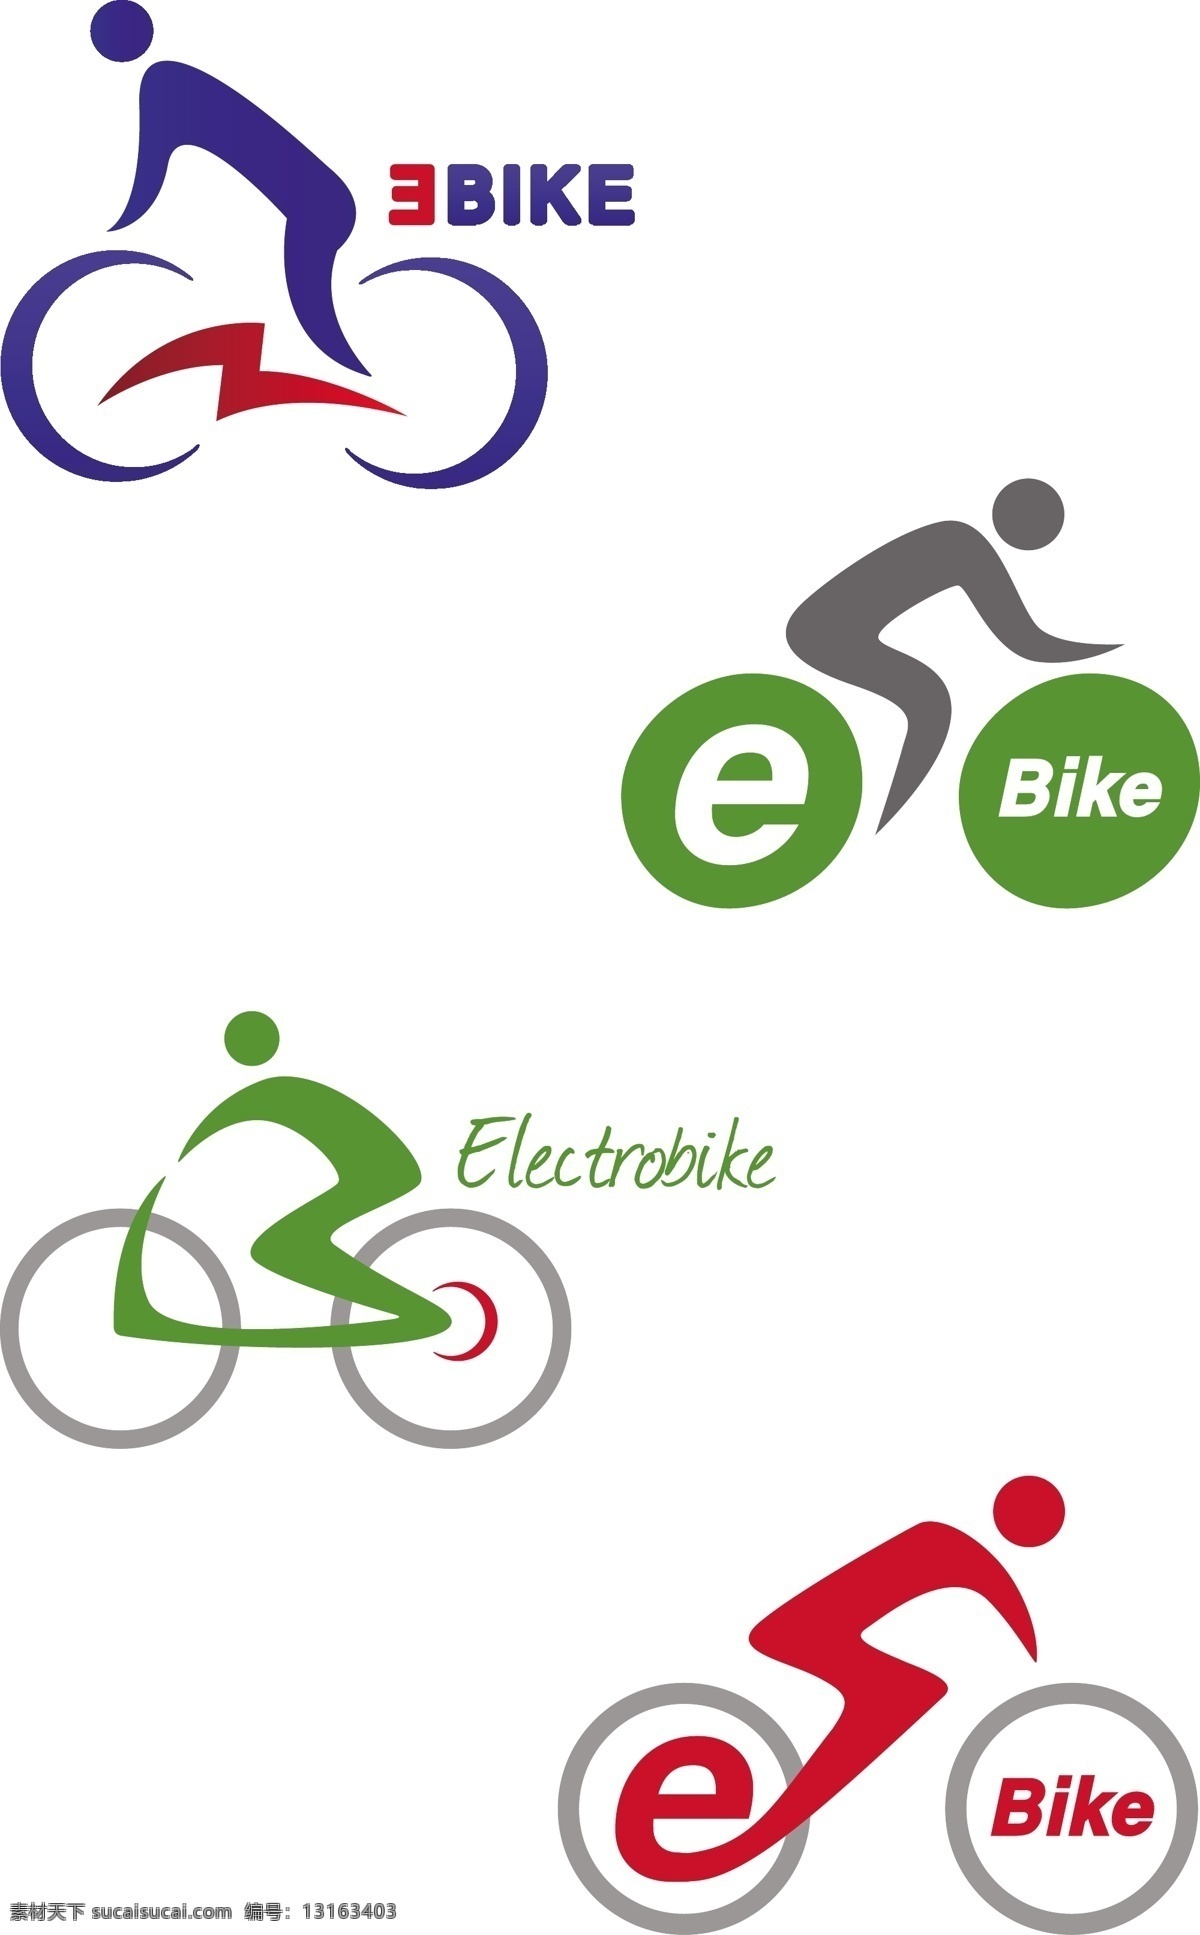 自行车 logo logo图形 创意logo 标志设计 商标设计 企业logo 公司logo 标志图标 矢量素材 白色